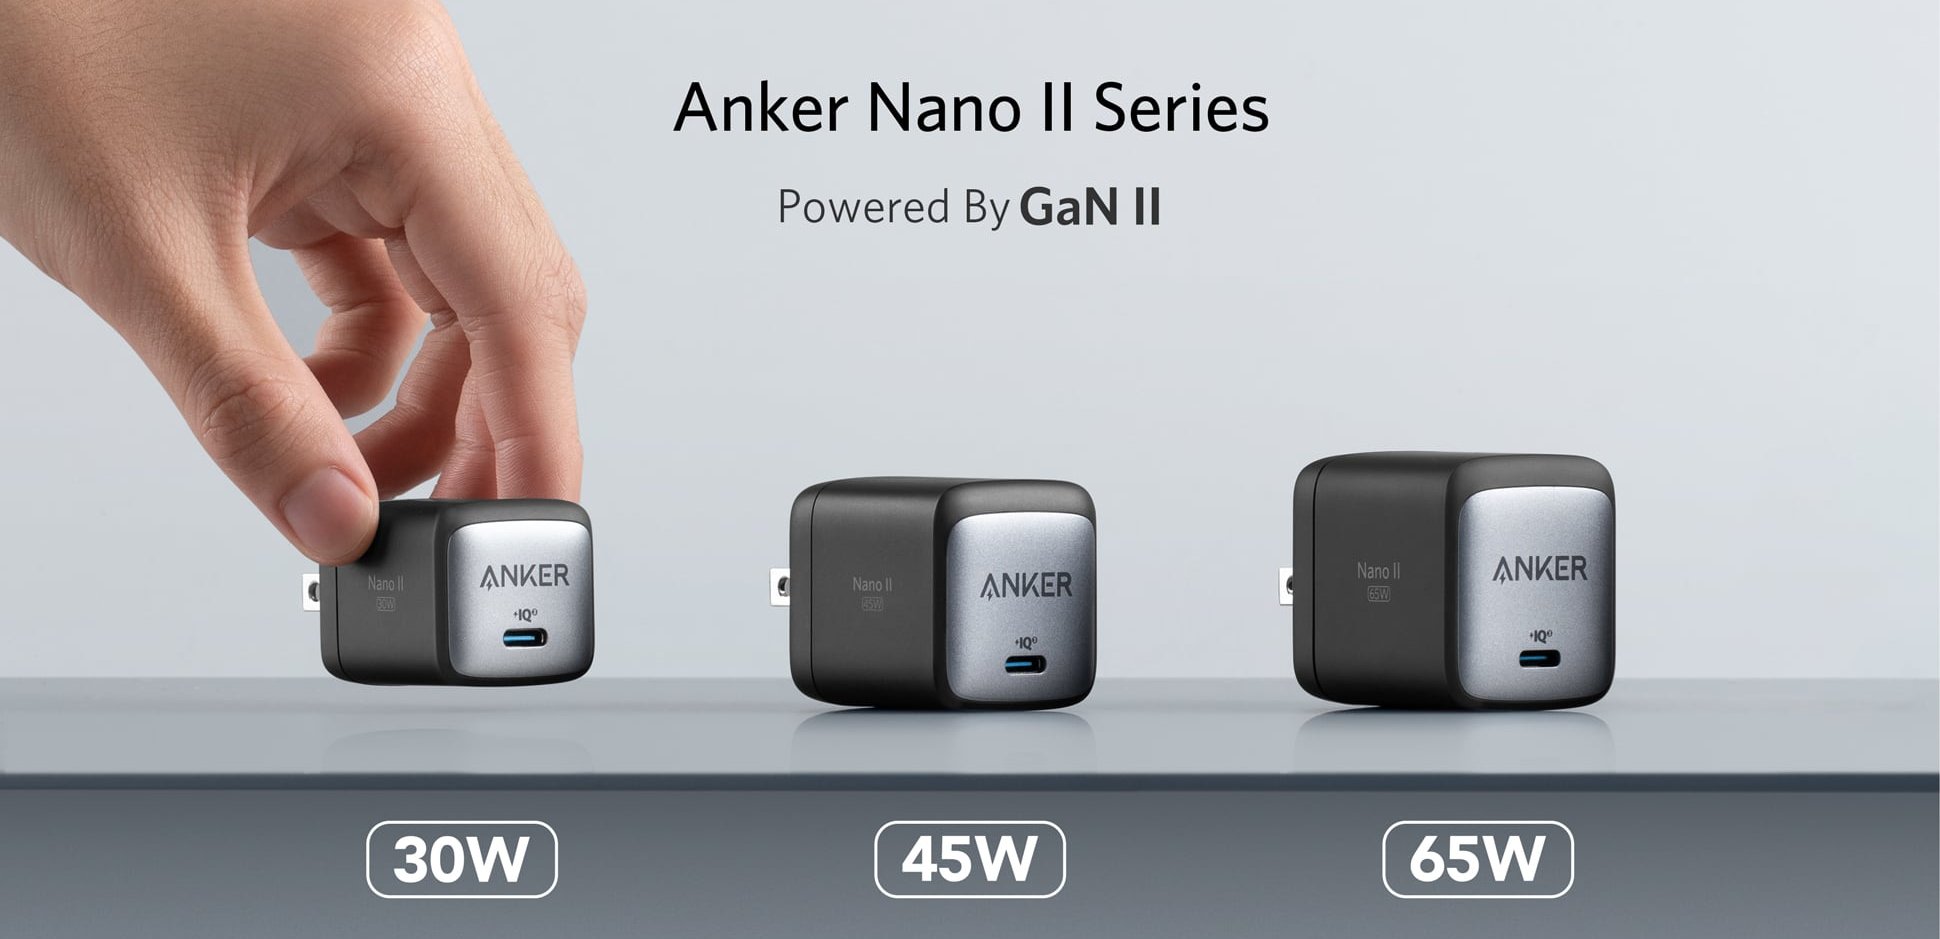 Anker Nano Ii Series